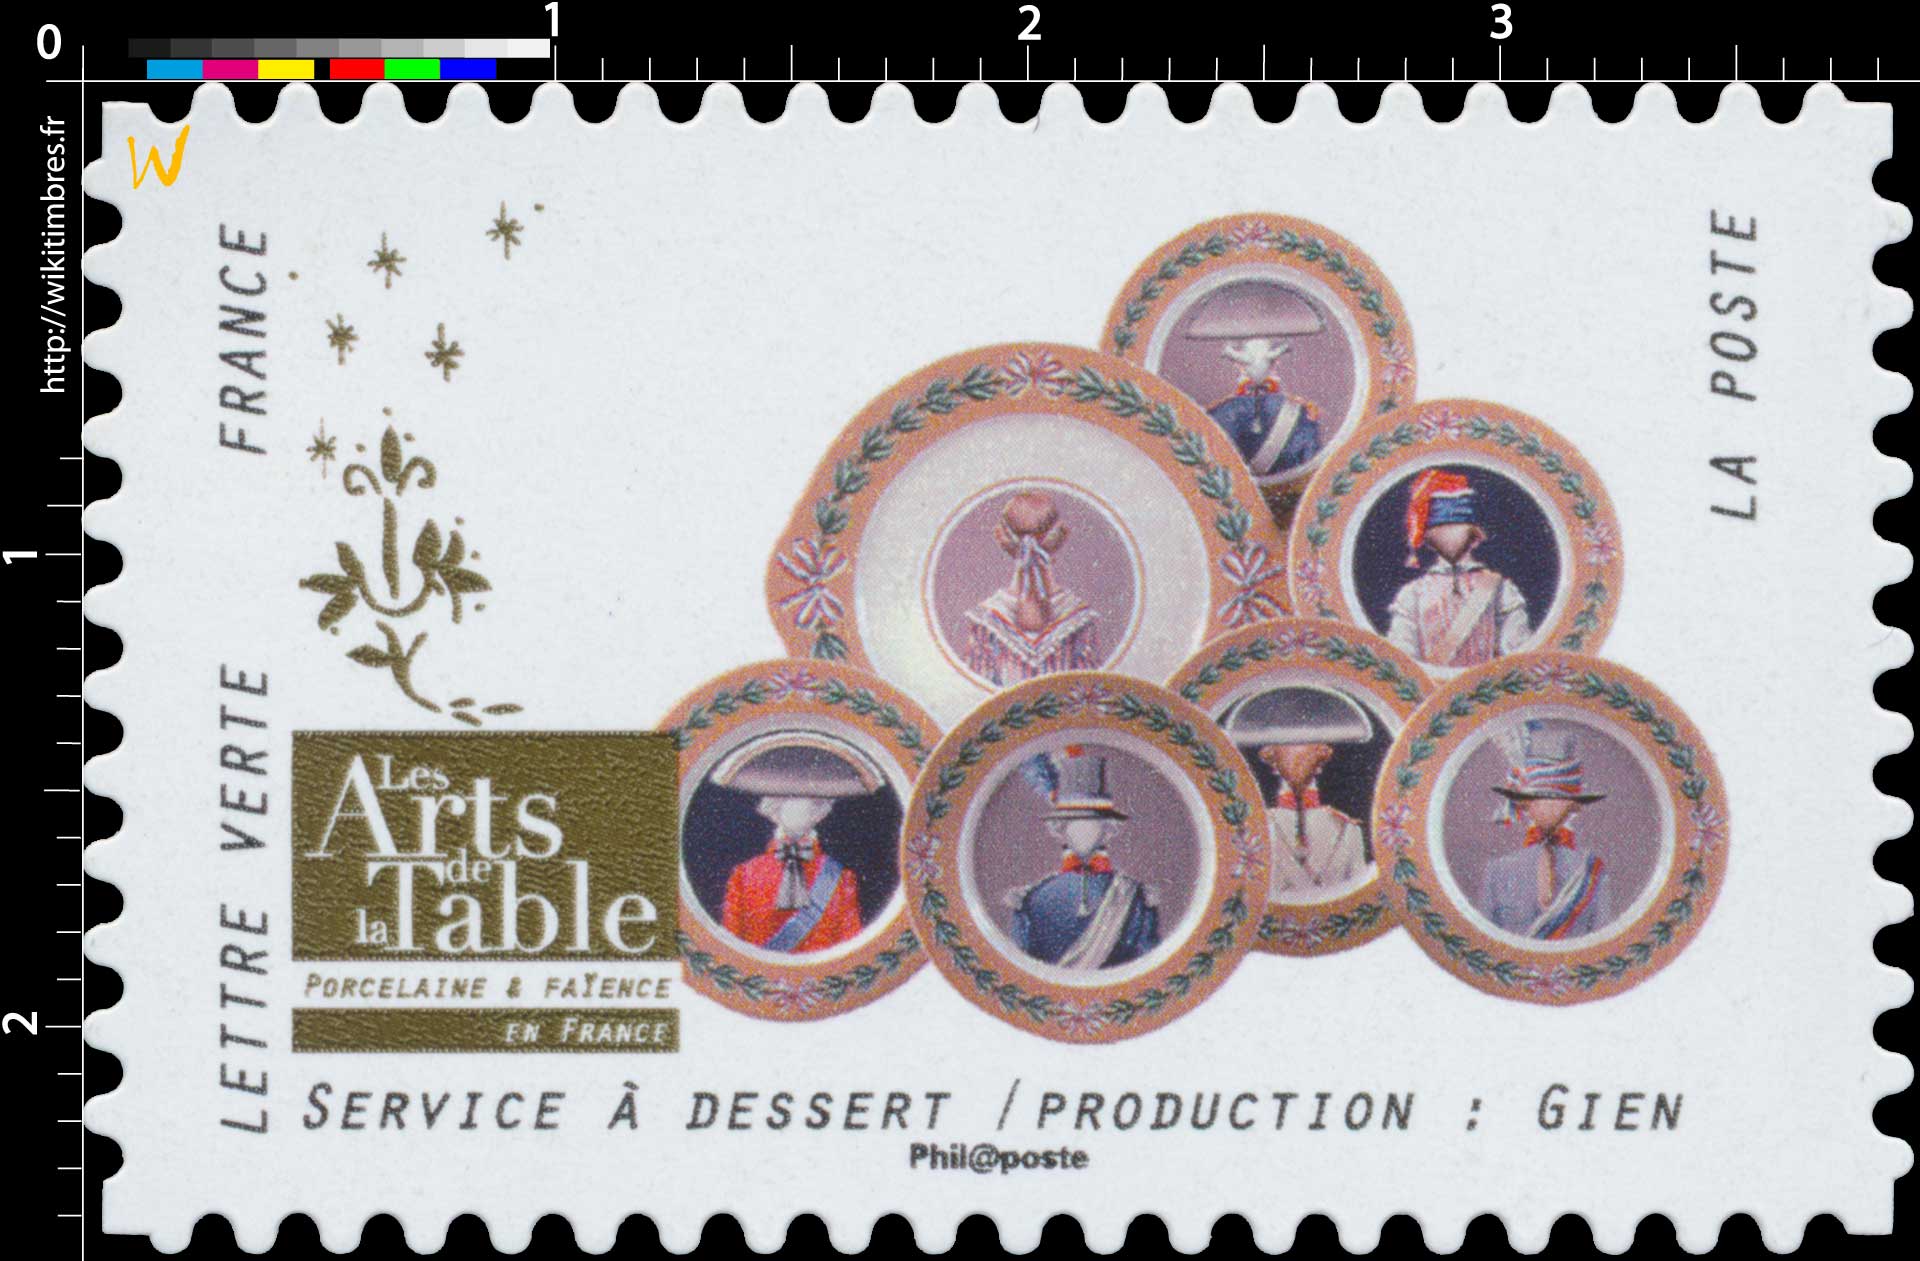 2018 Les Arts de la Table -  Porcelaine & Faïence - En France - Service à dessert / Production: Gien